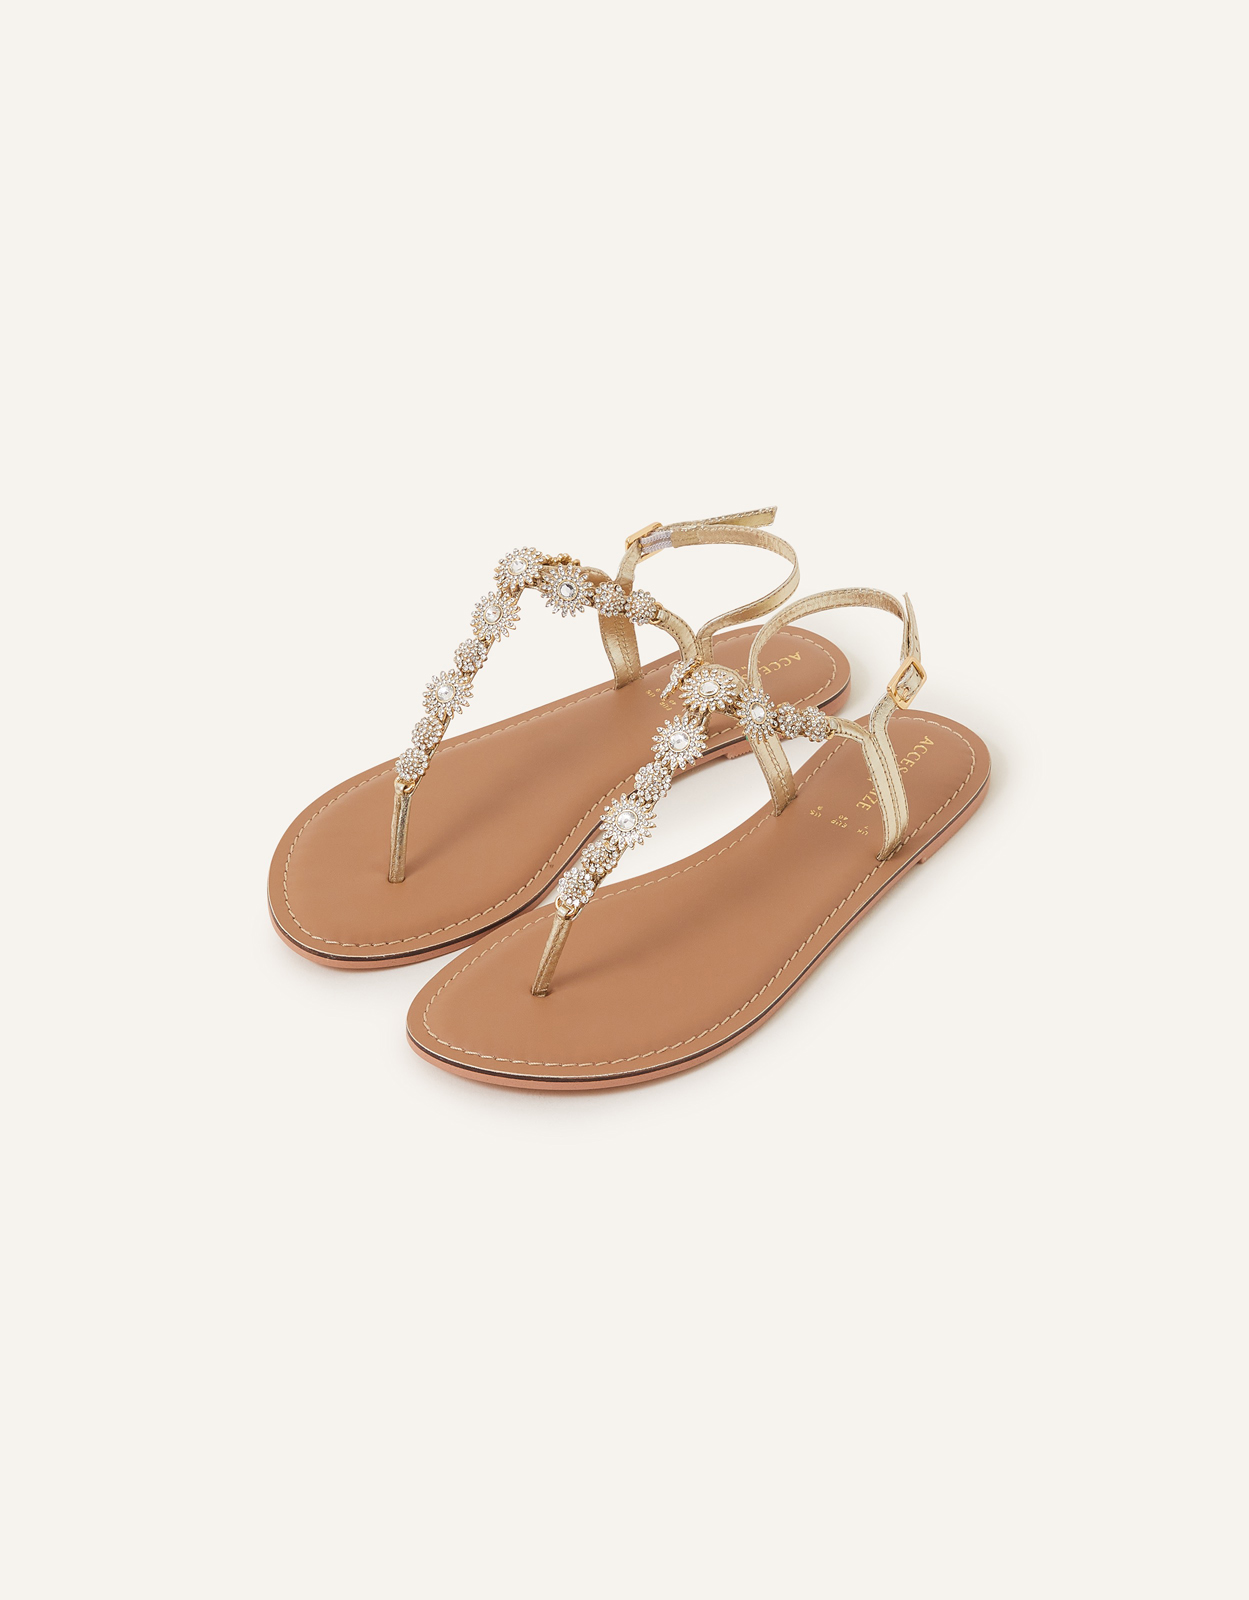 Accessorize Women's Rome Sparkle Sandals Gold, Size: 37